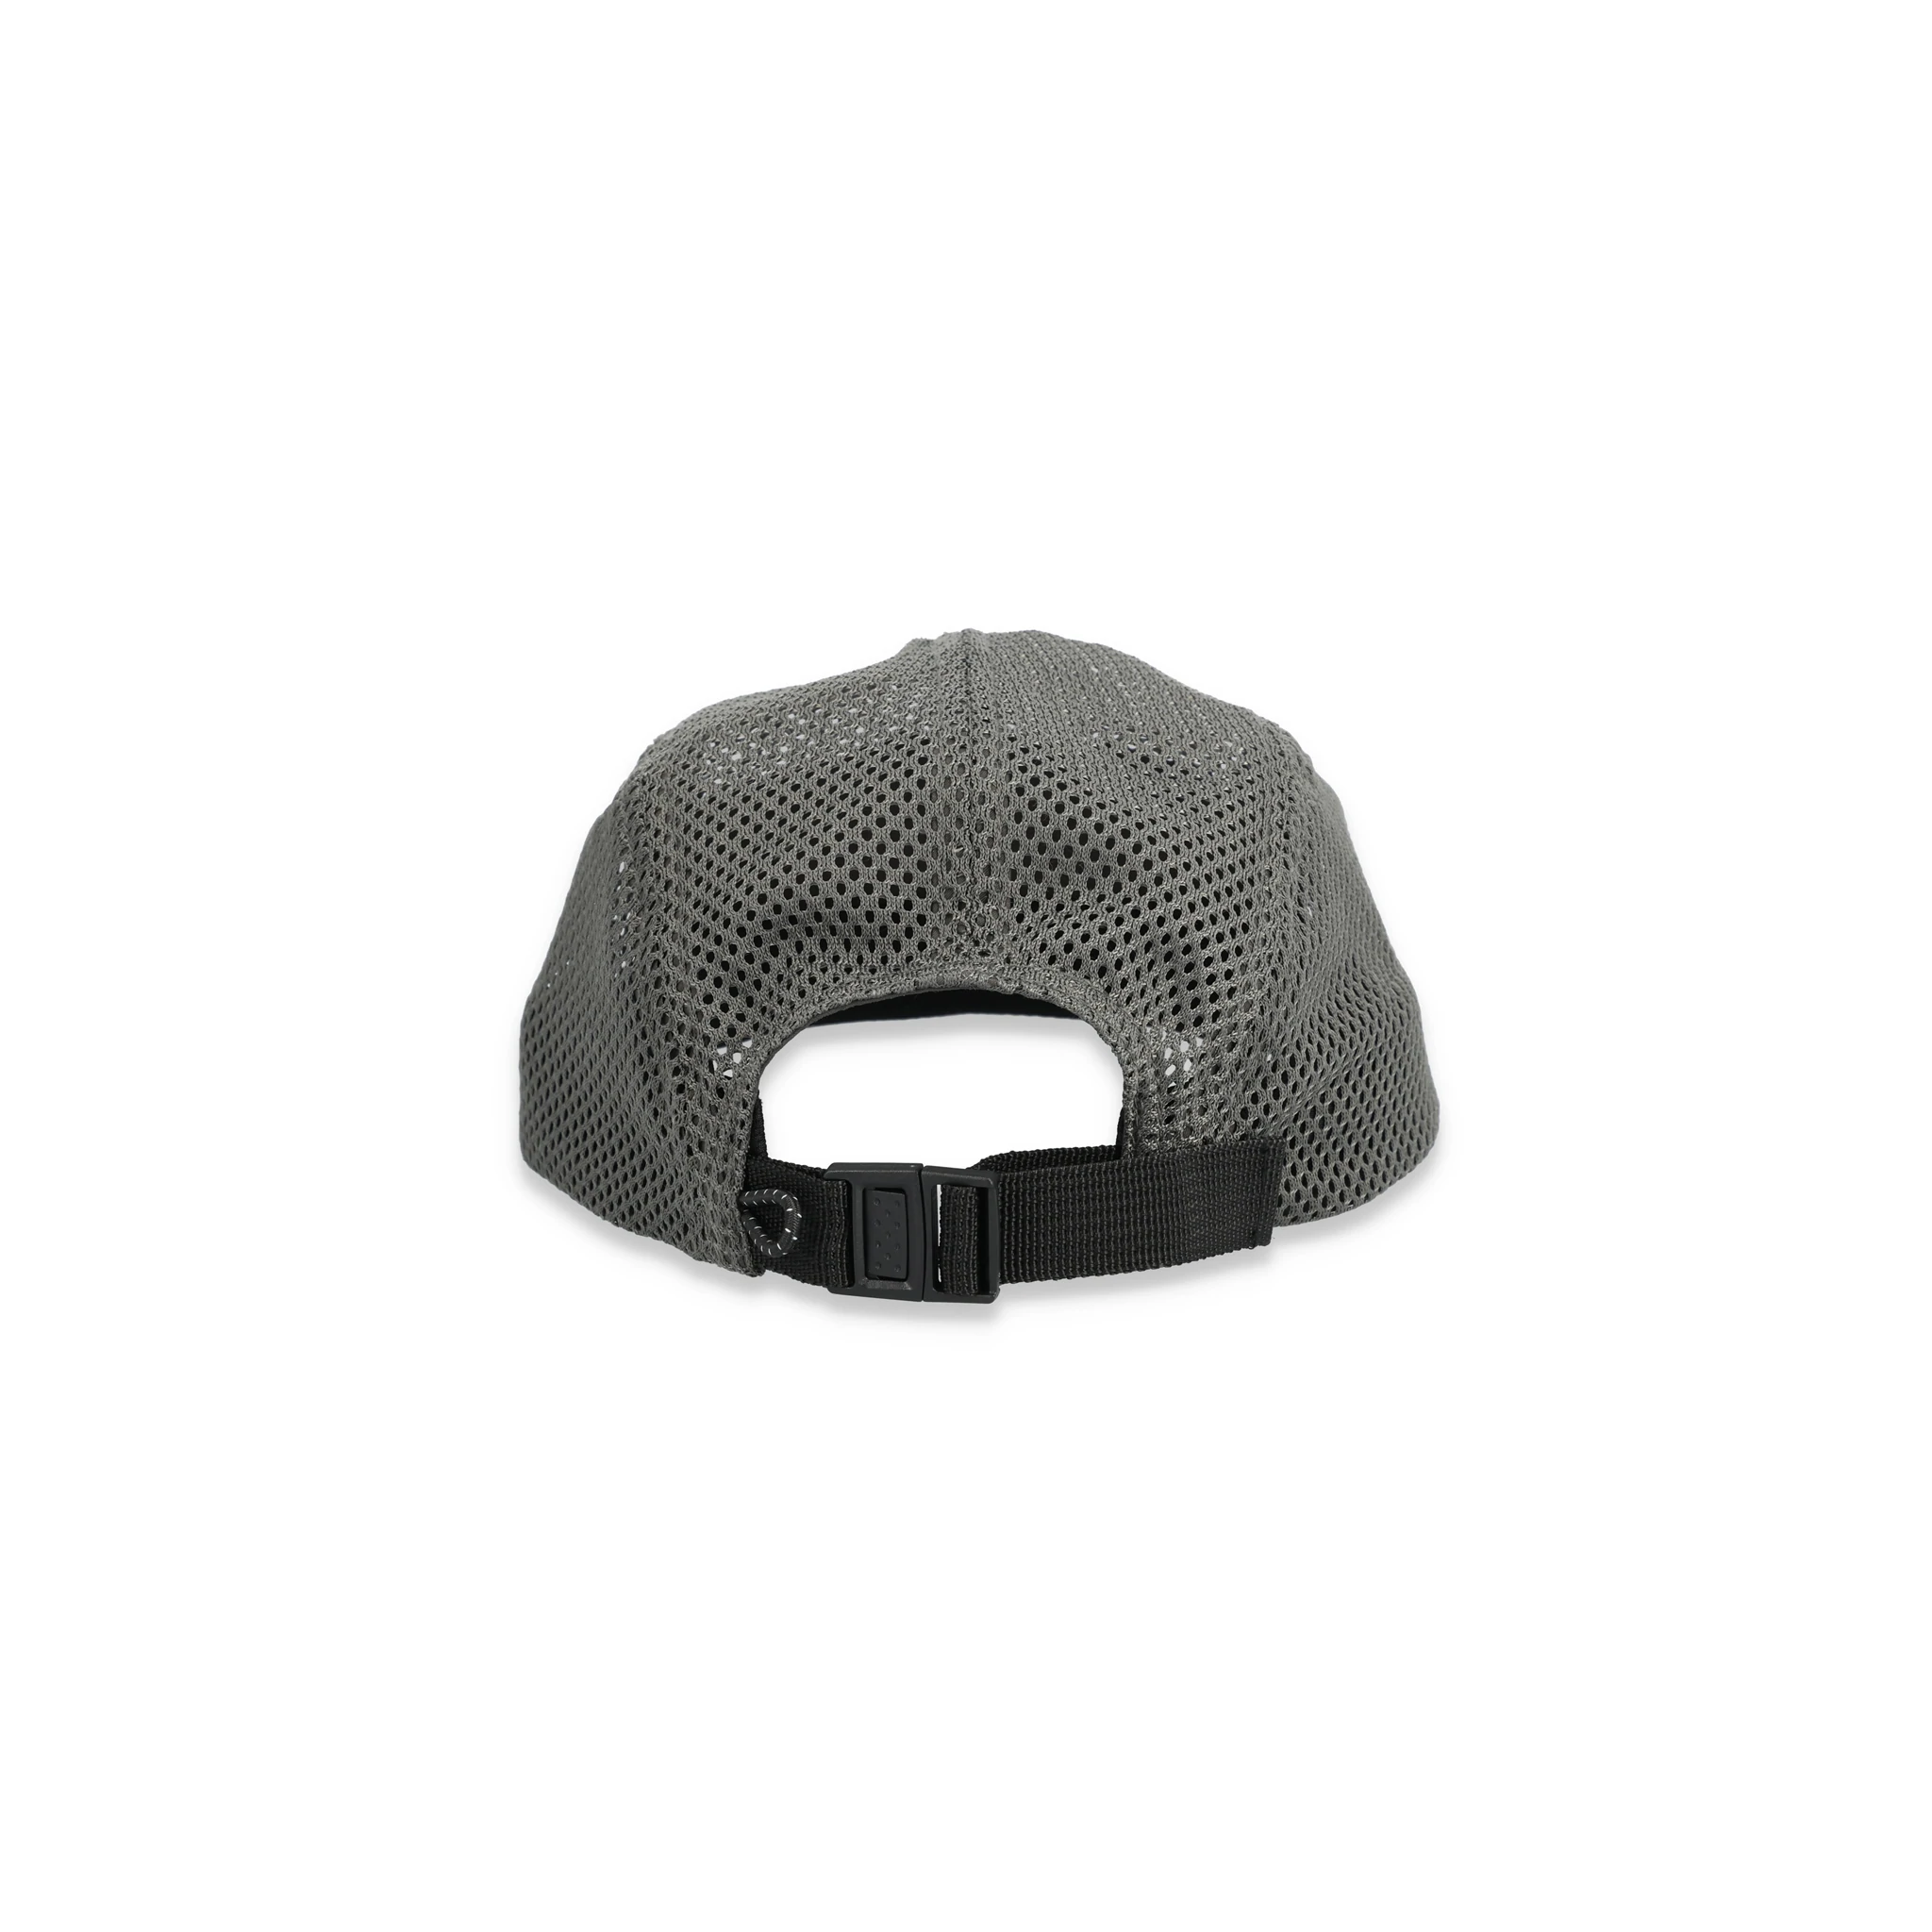 Topo Designs Canada, Accessories/Hats